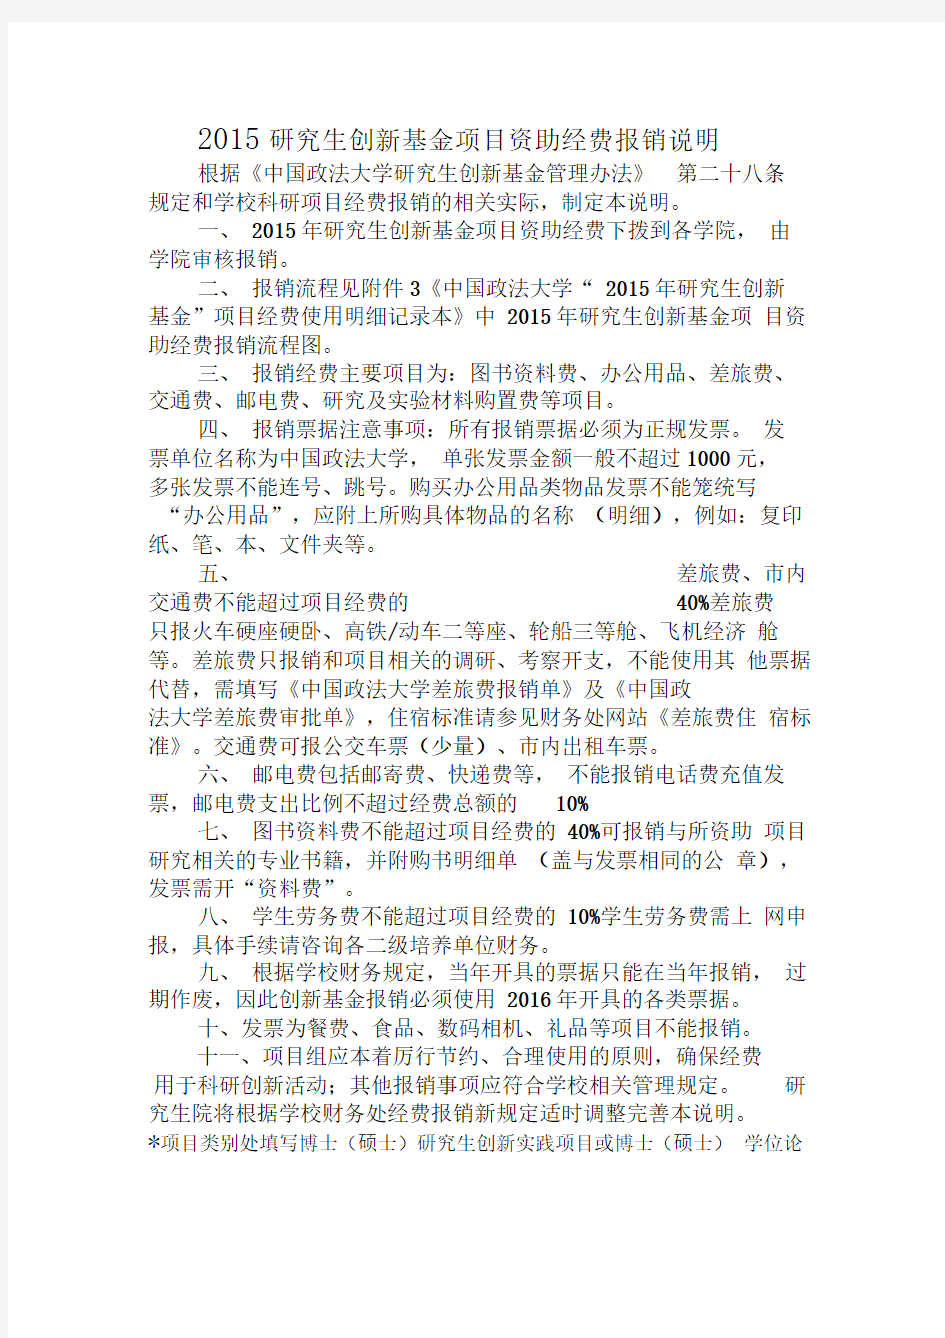 中国政法大学“2015年研究生创新基金”项目经费使用明细记录本.doc